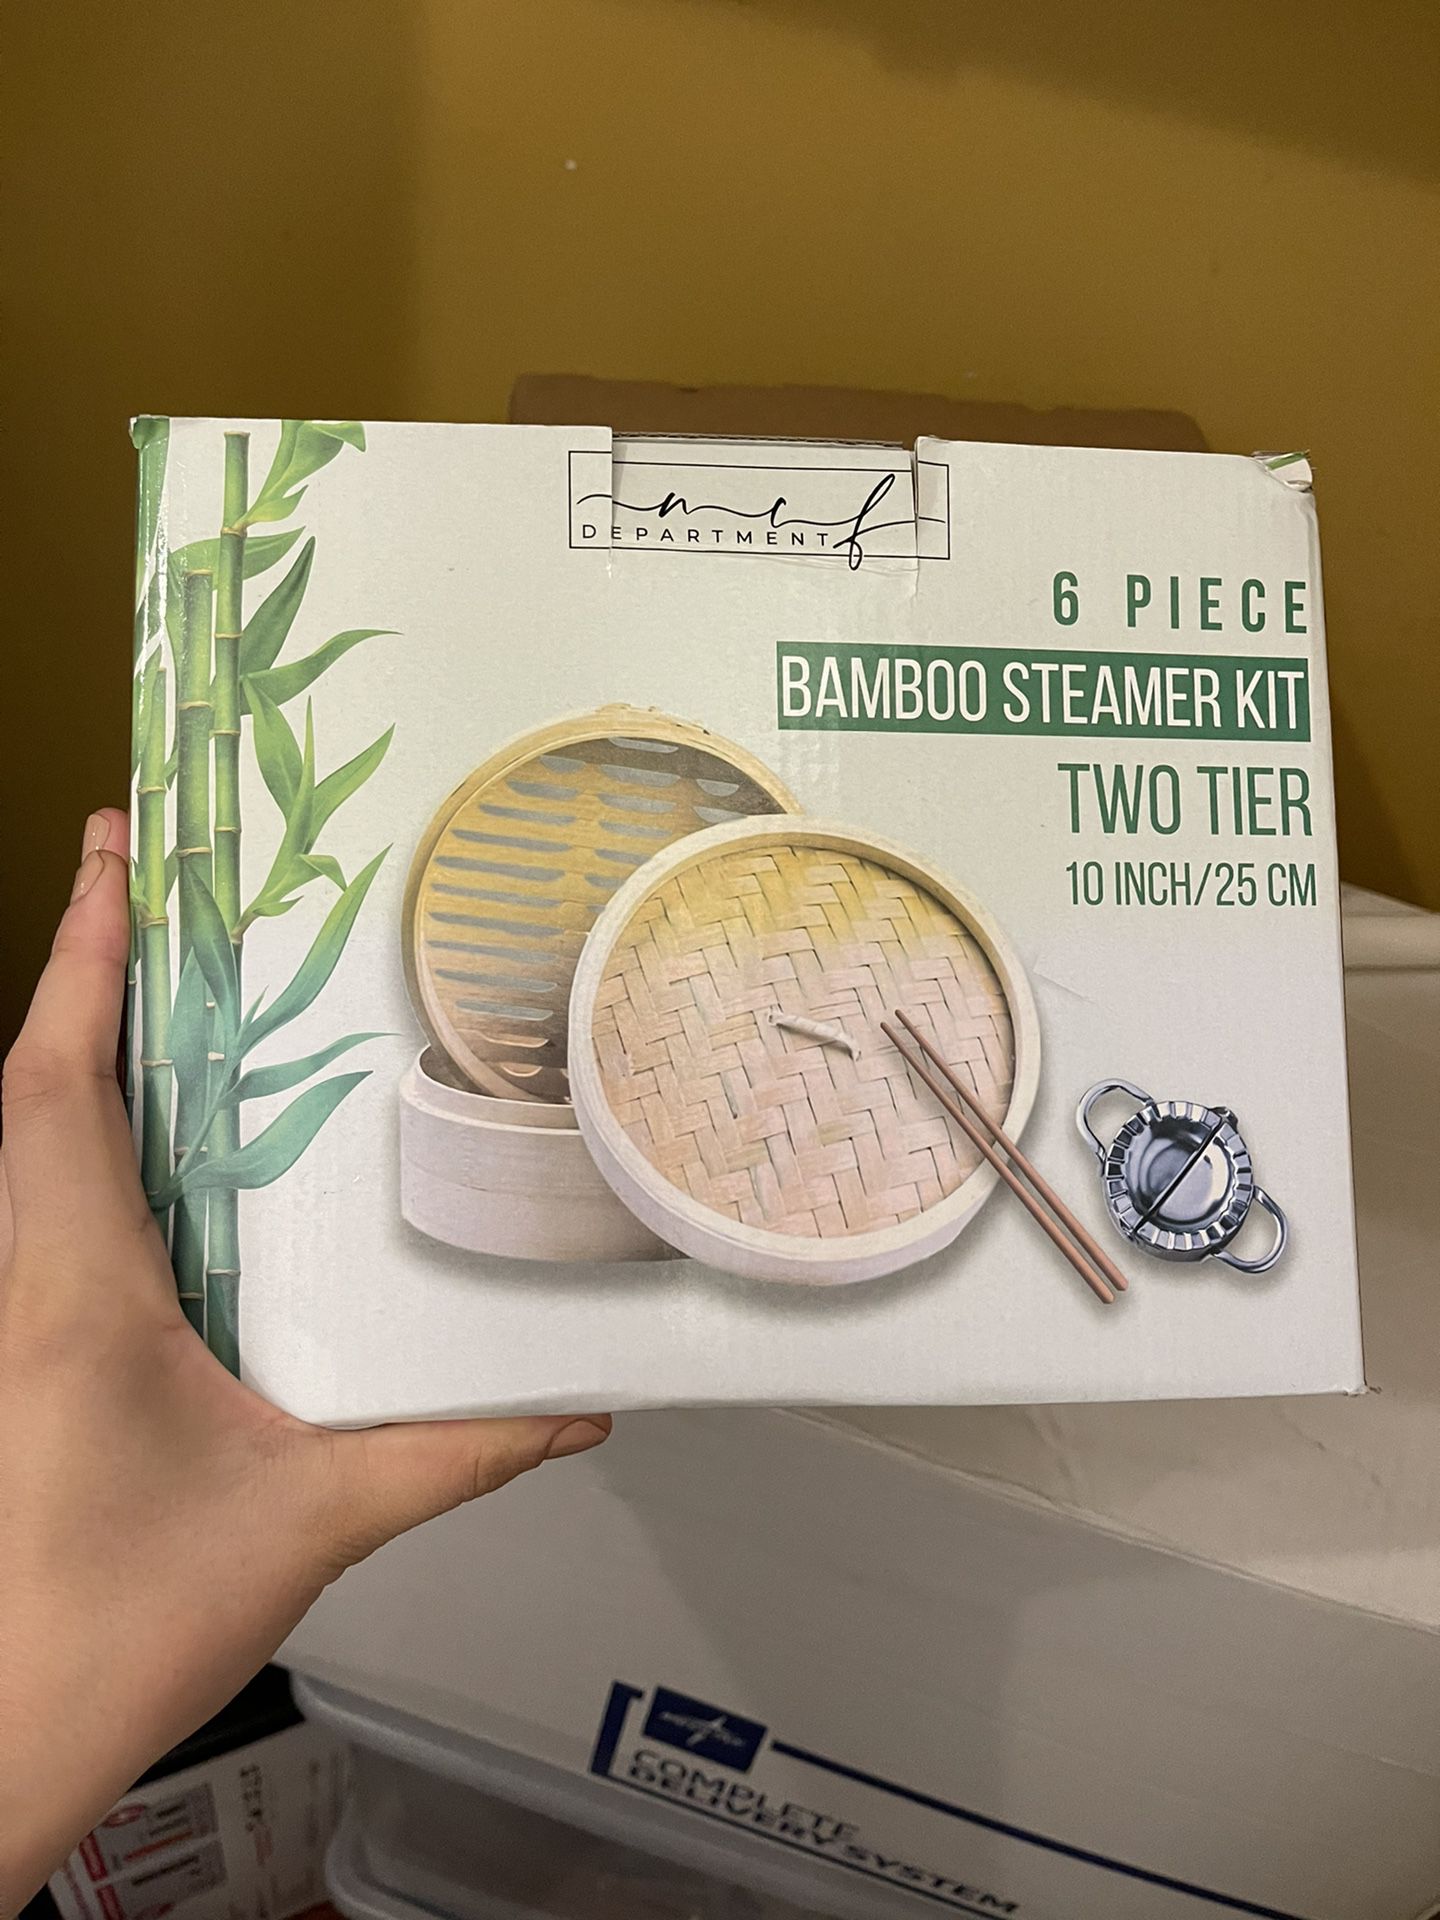 Bamboo steamer kit 